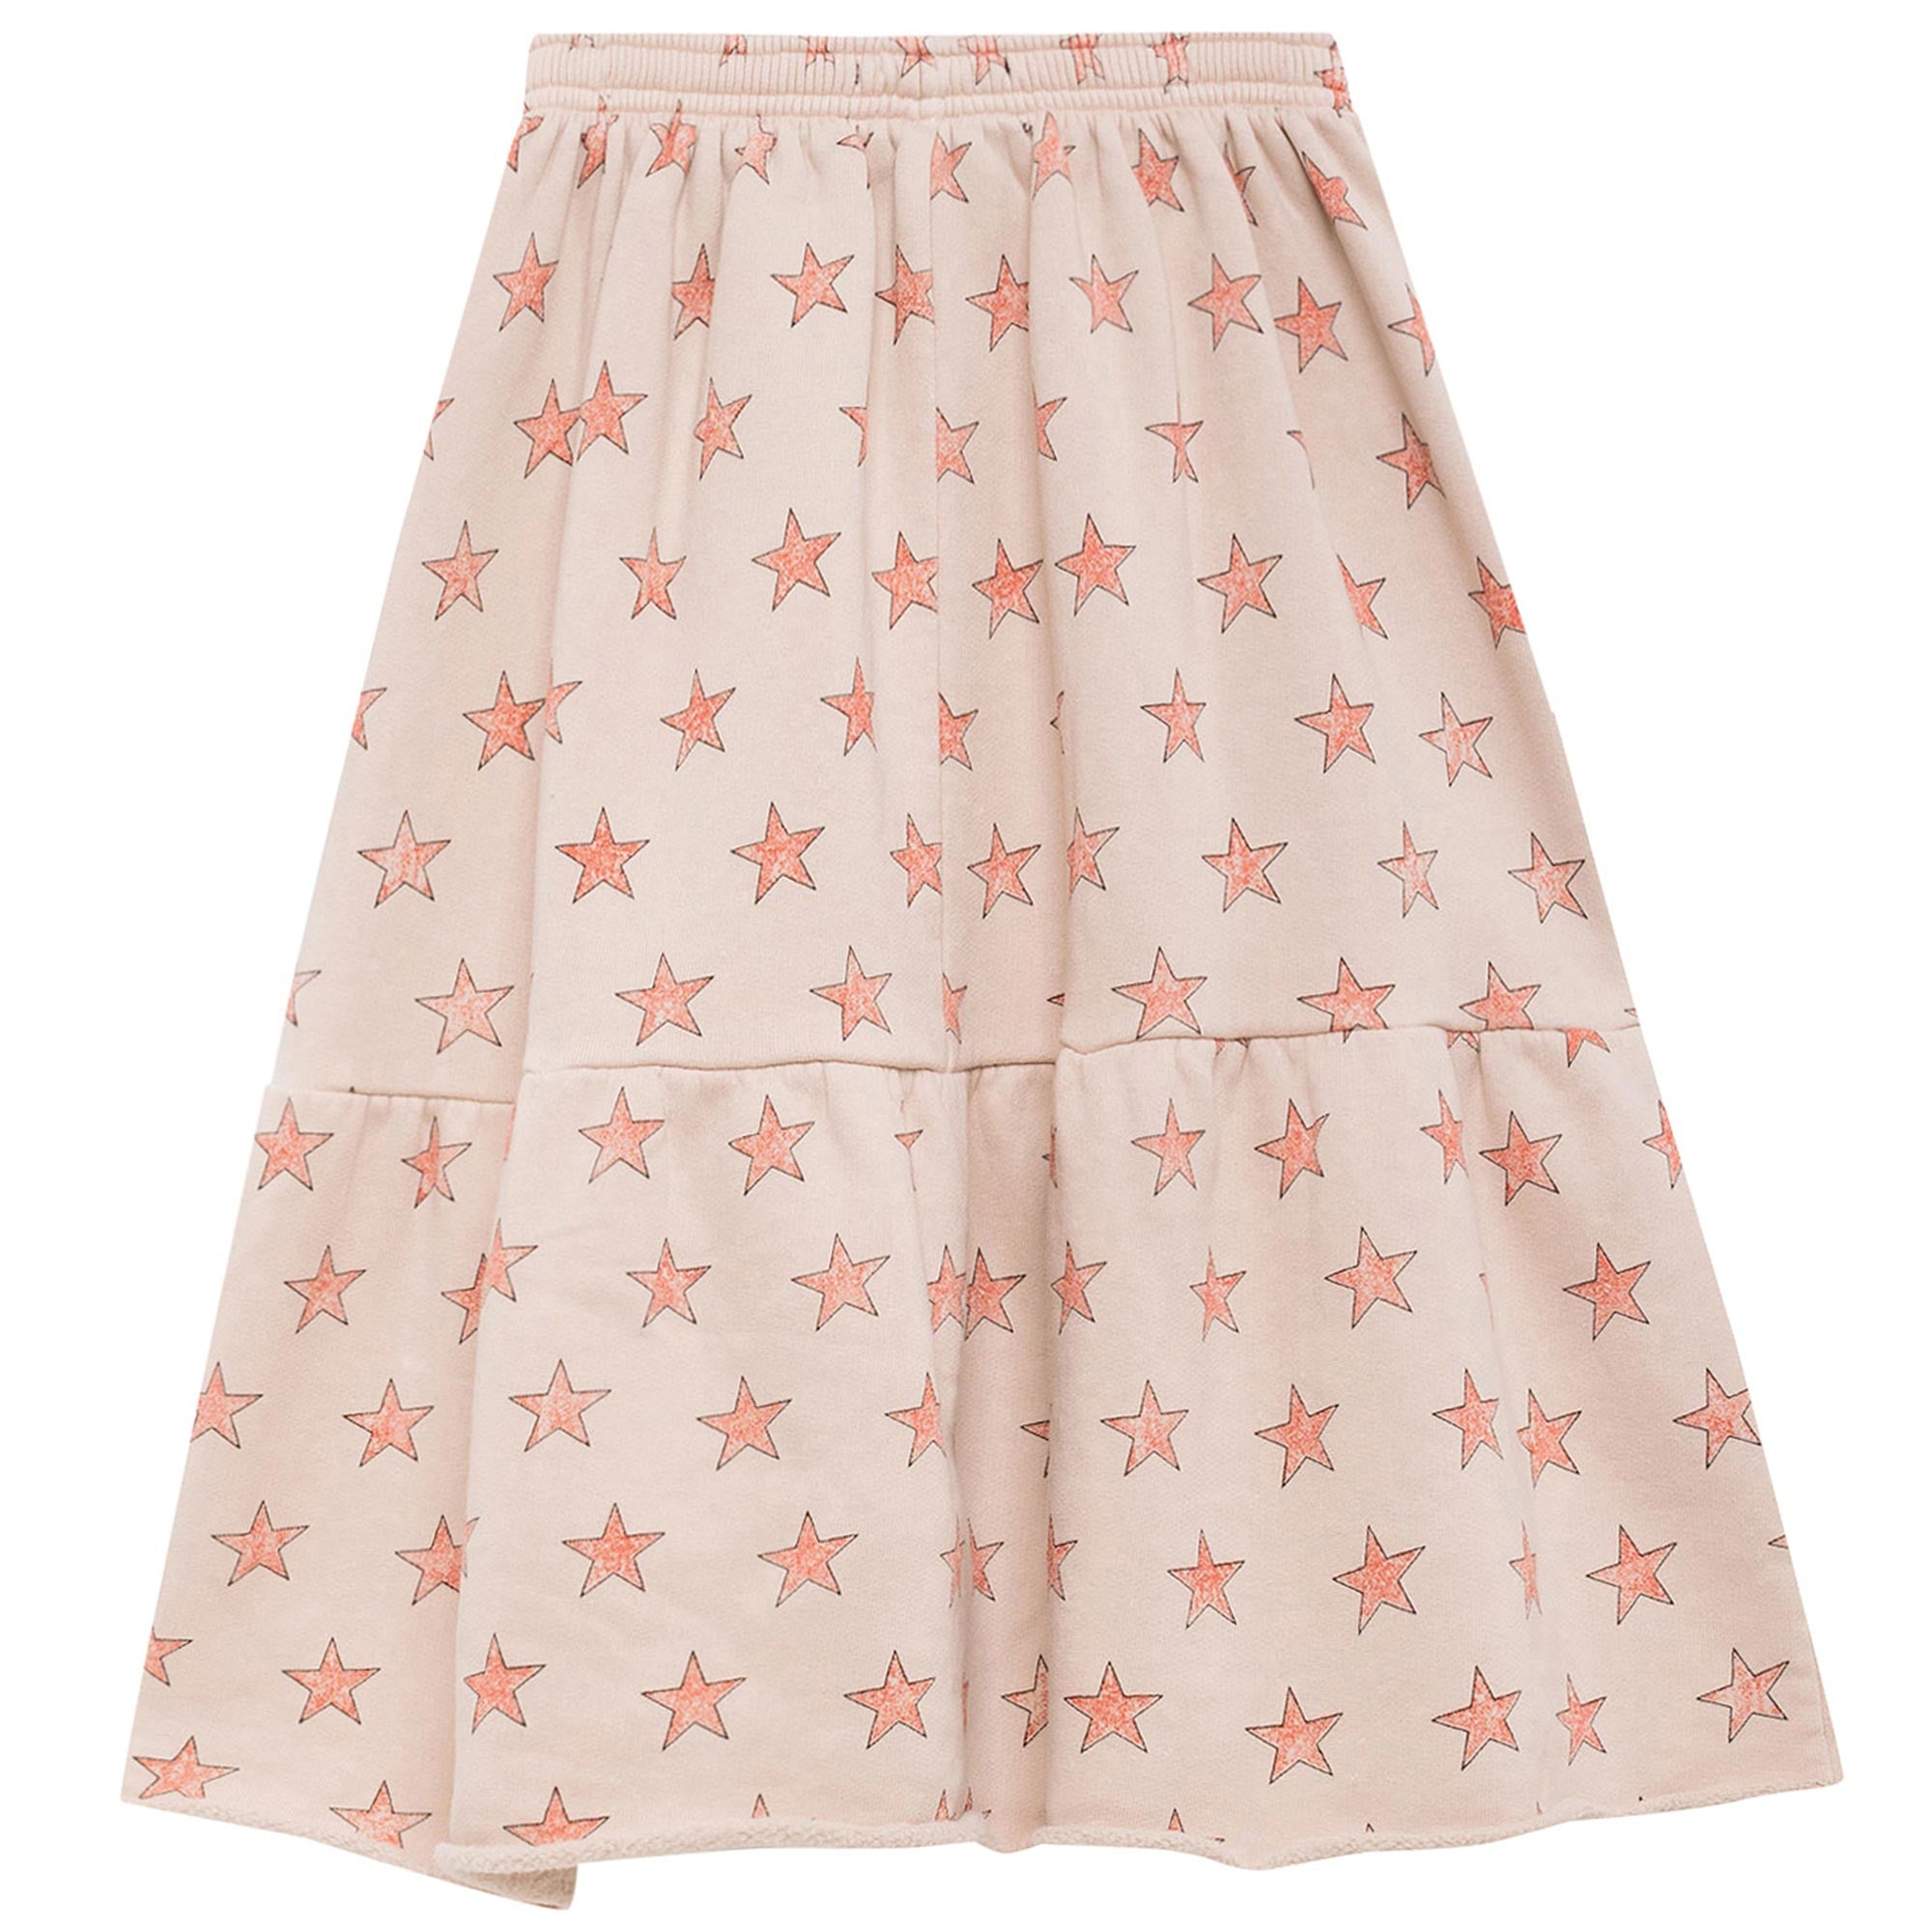 Girls Light Pink Stars Cotton Skirt